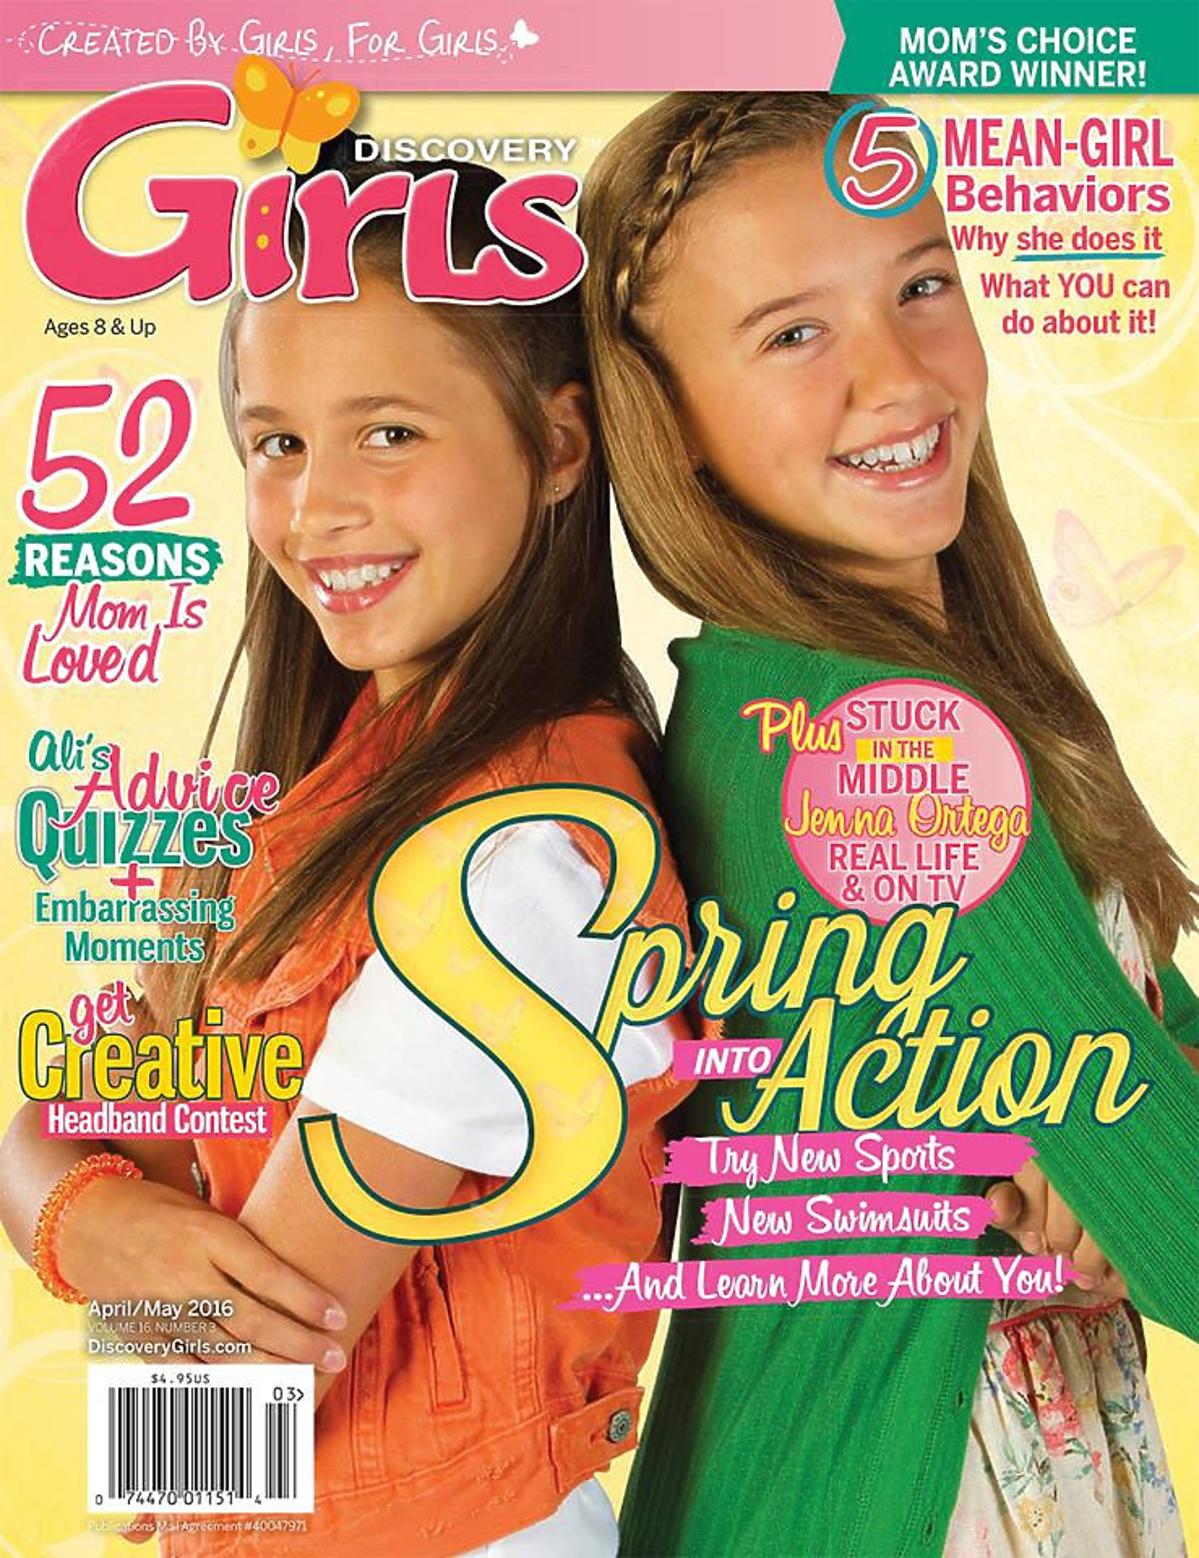 Discovery Girls - magazyn dla dziewczynek